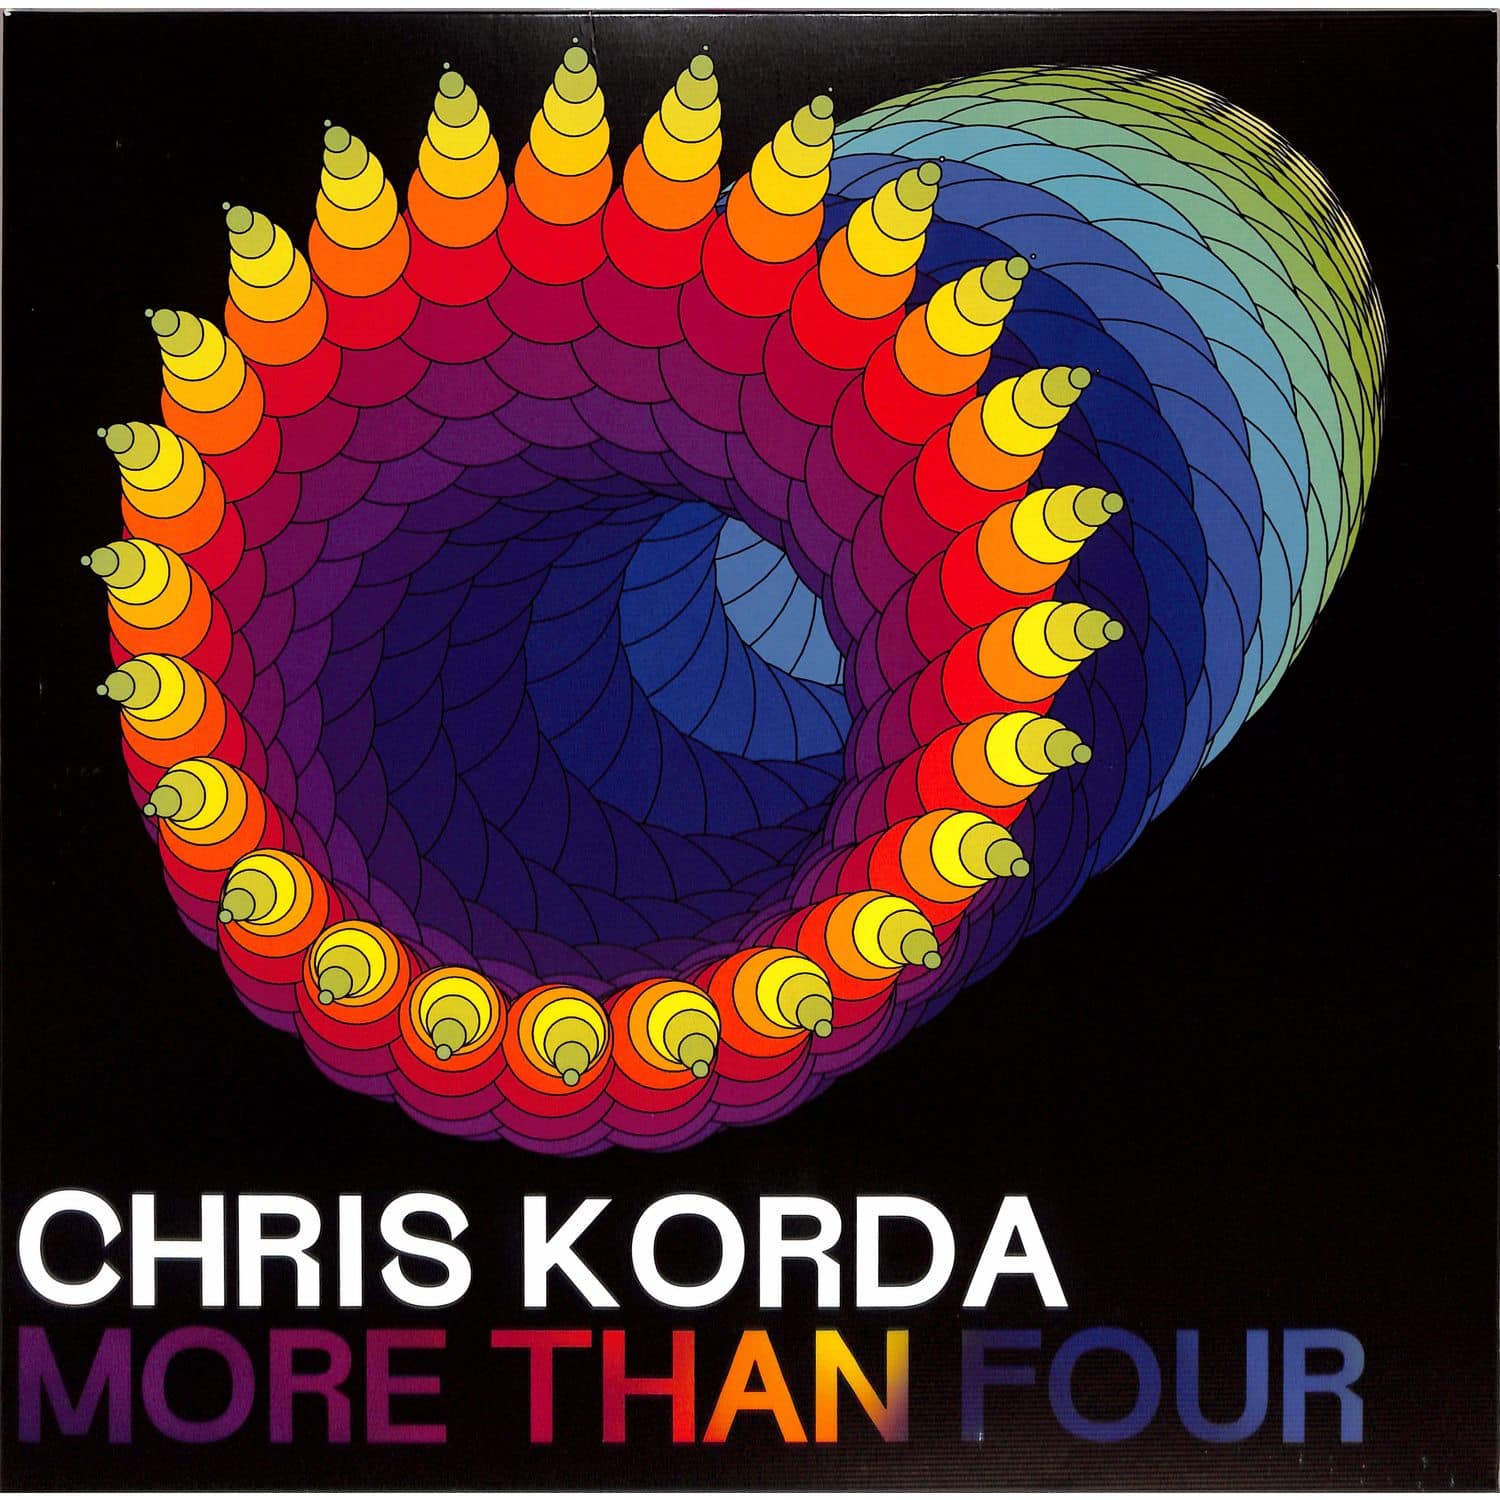 Chris Korda - MORE THAN FOUR 